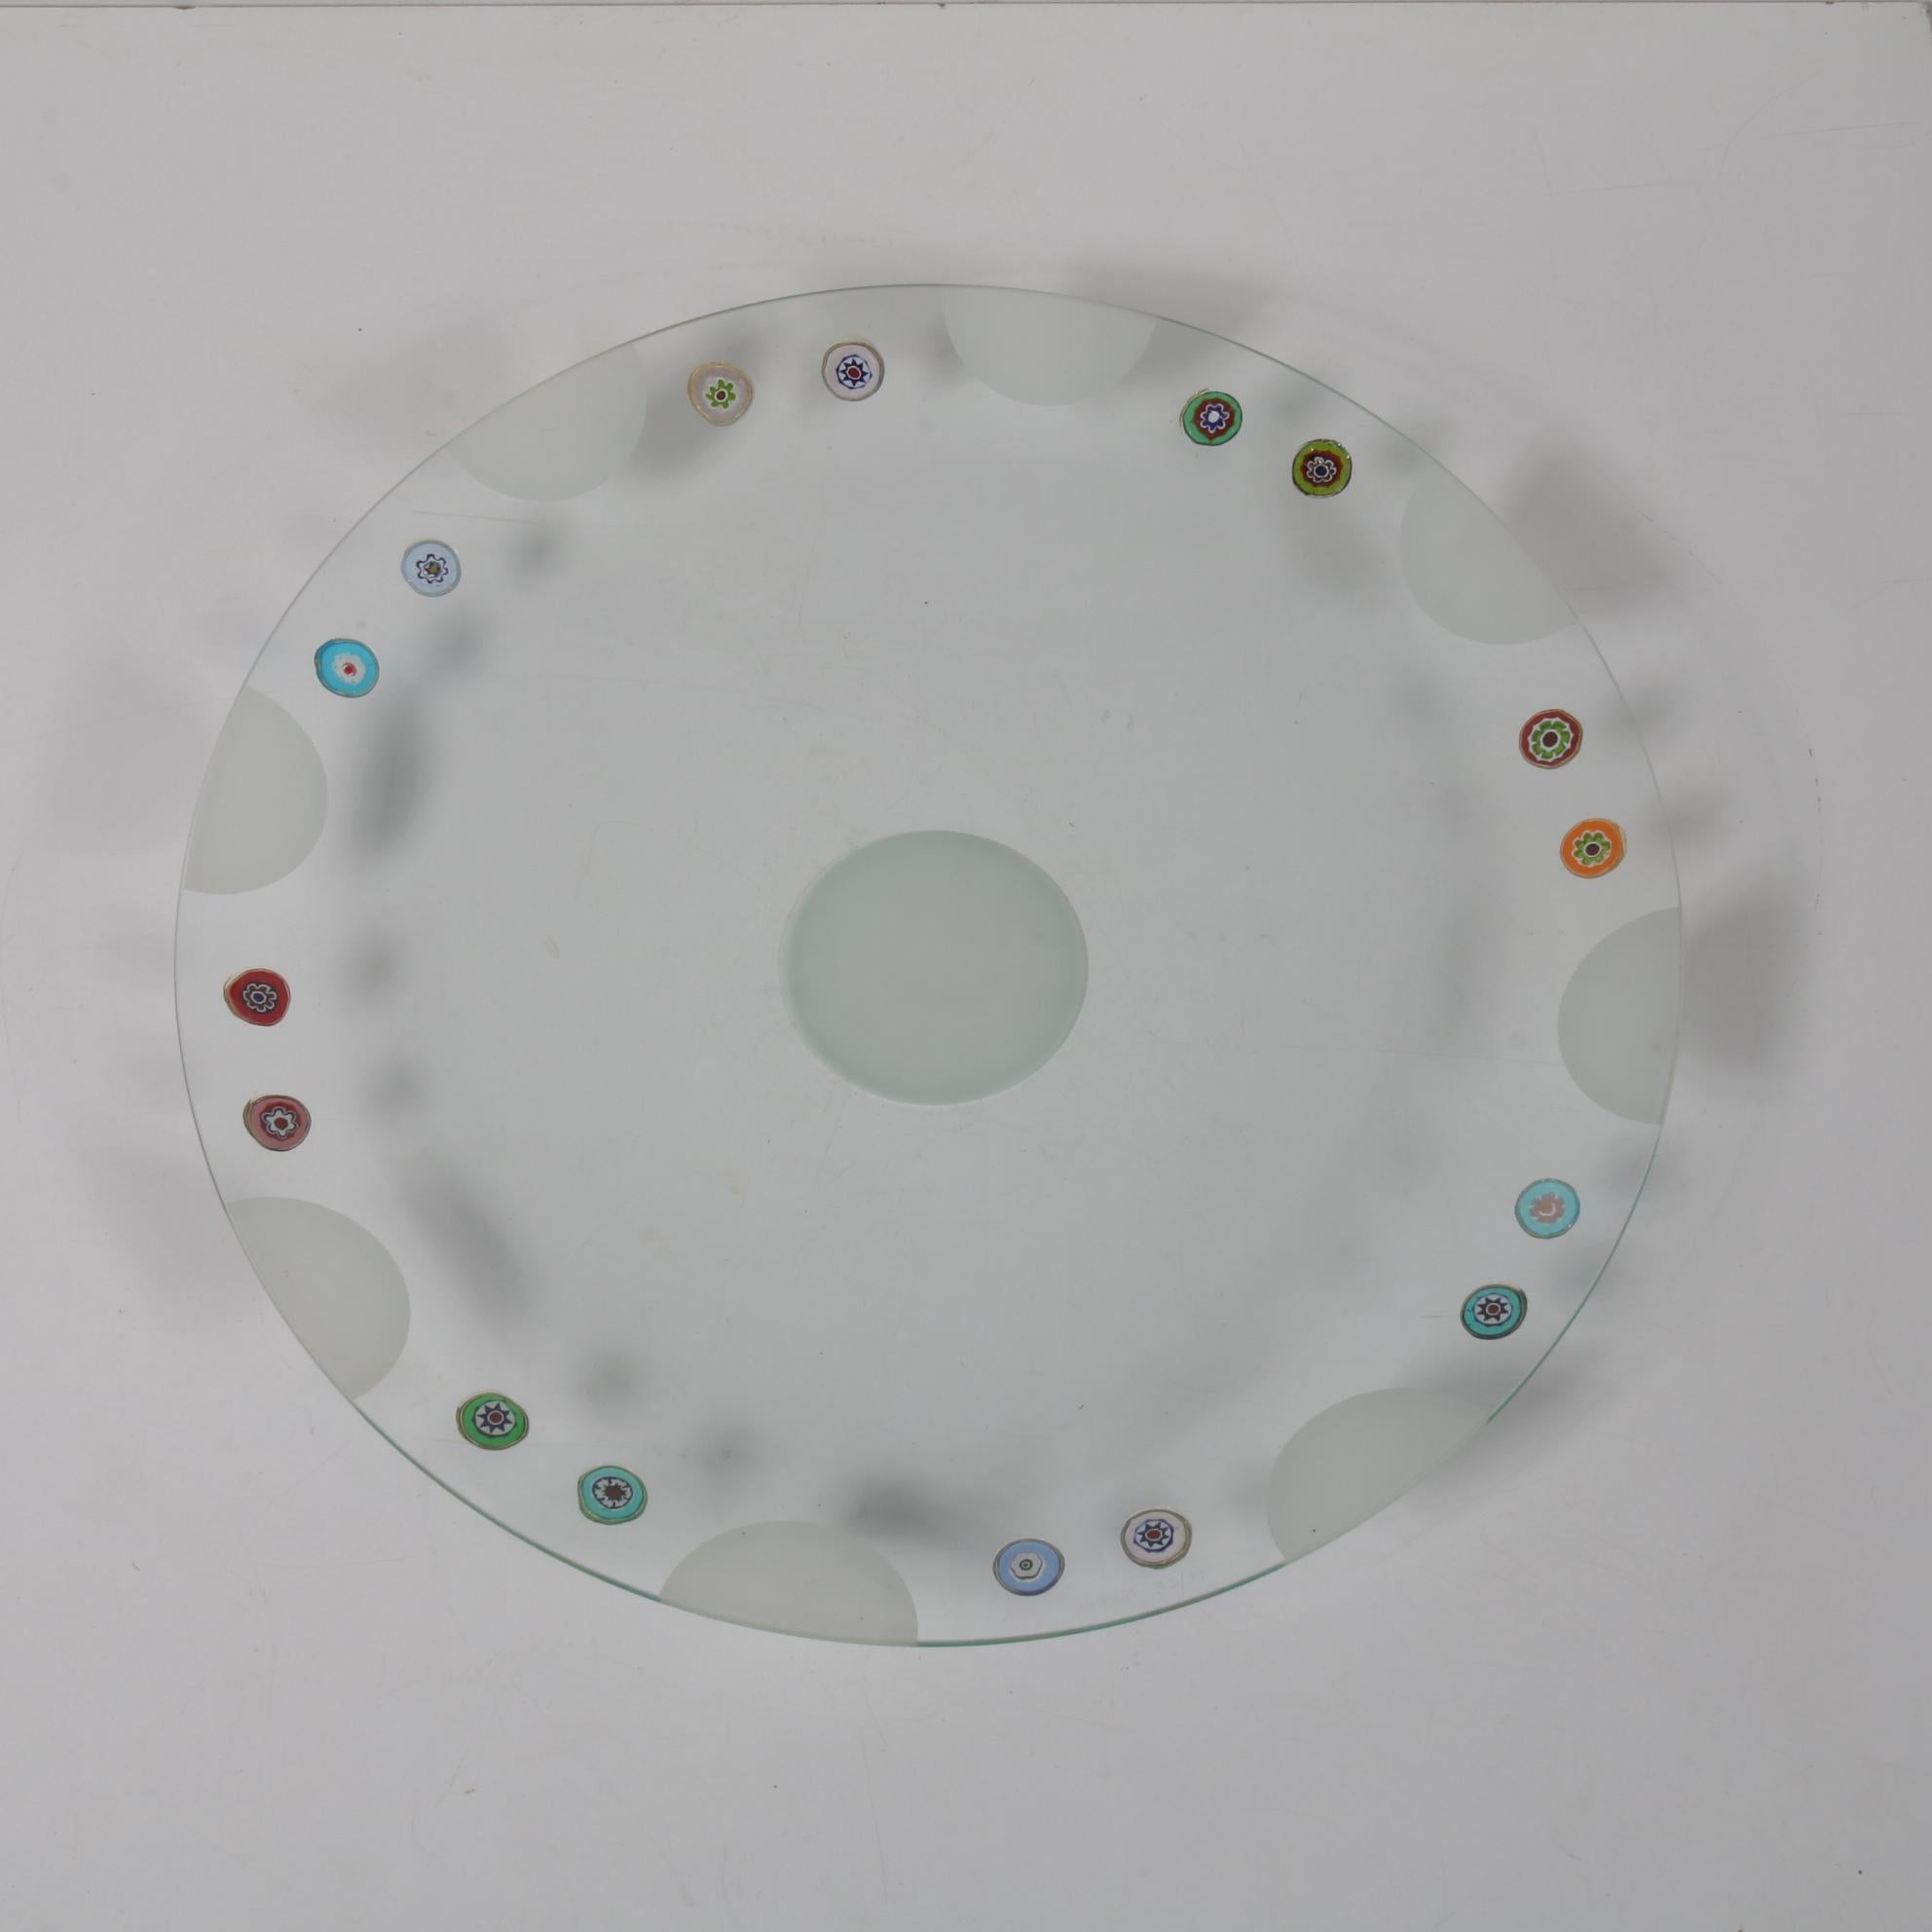 20th Century Rare Bruno Munari Glass Plate from 